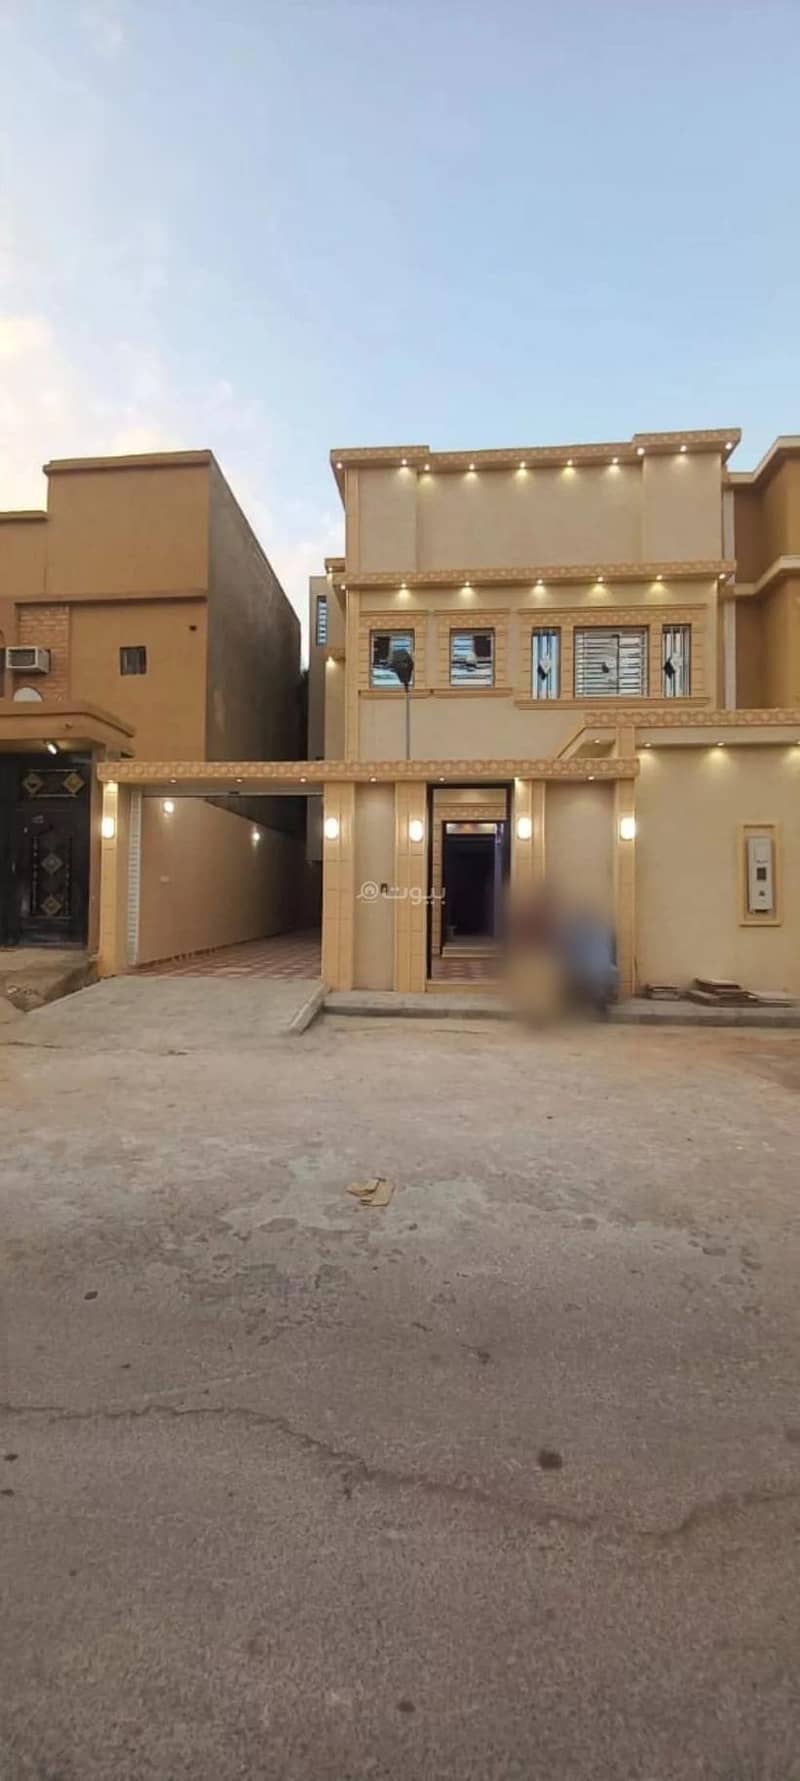 5-Room Villa For Sale Ahmed Ibn Al Khattab Street, Riyadh